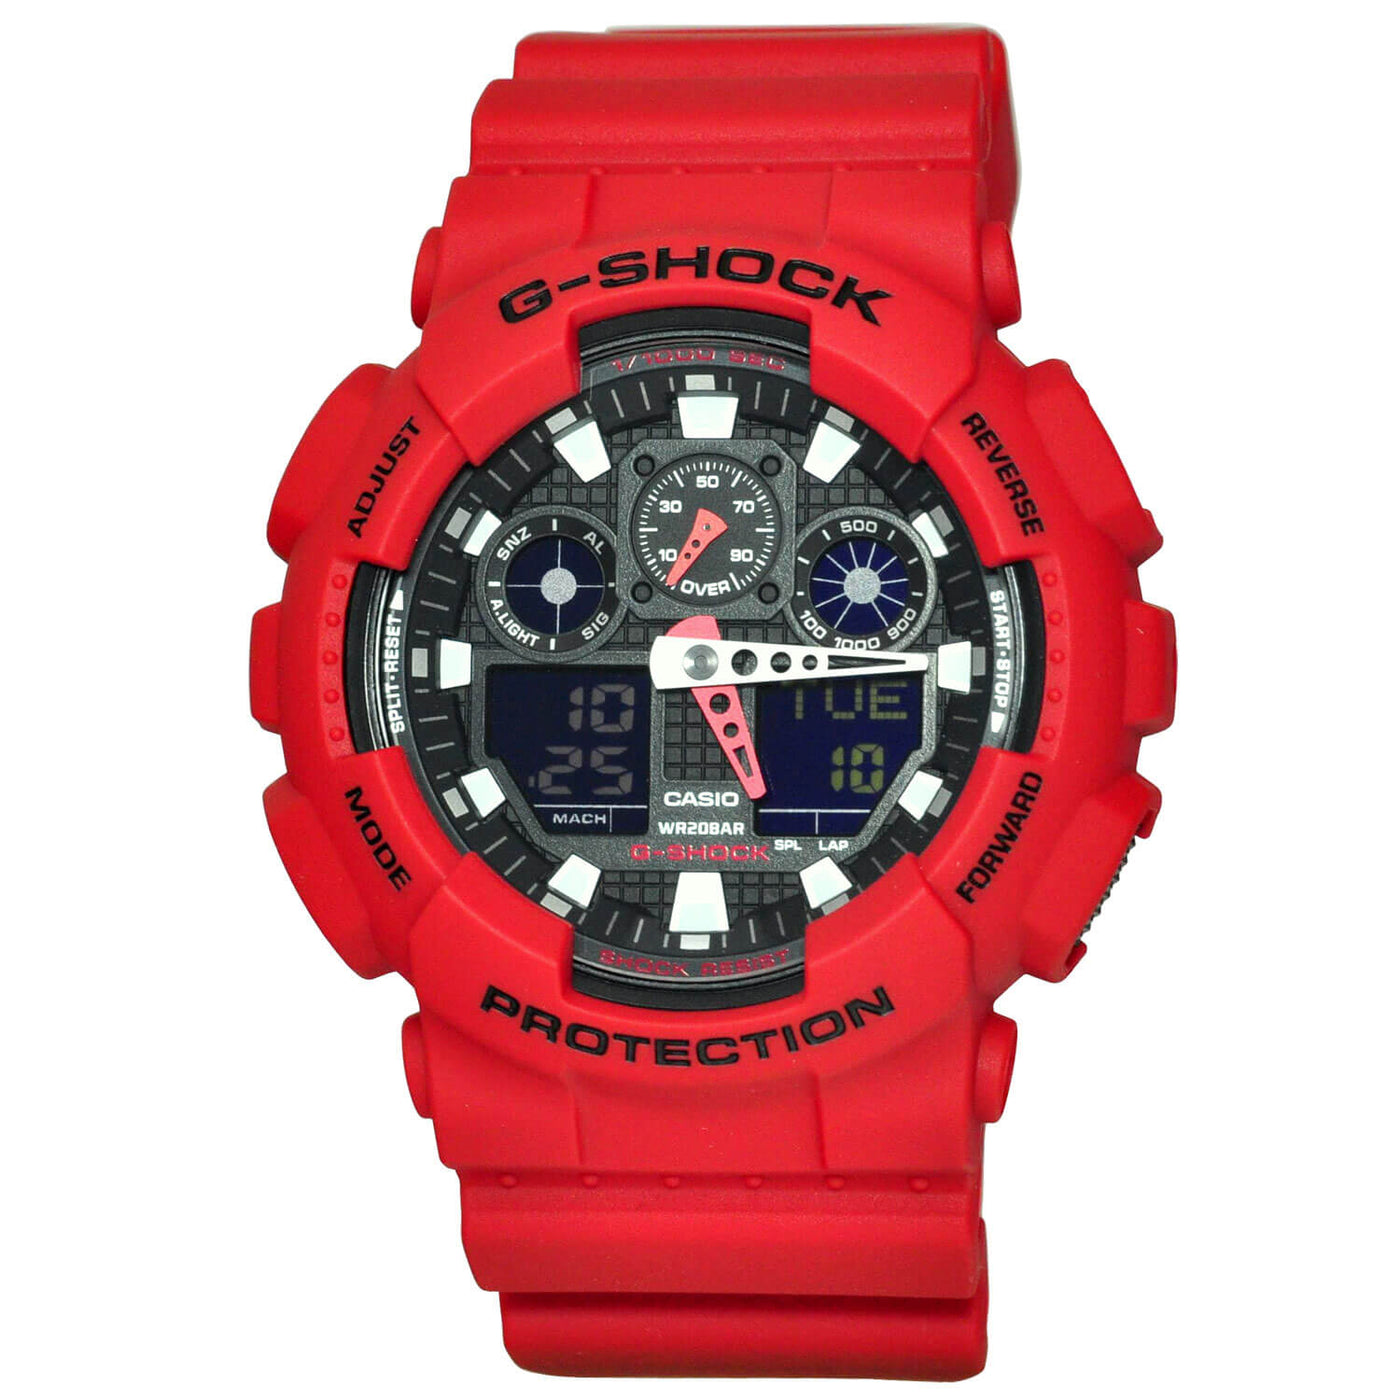 Red Casio G-Shock Watch